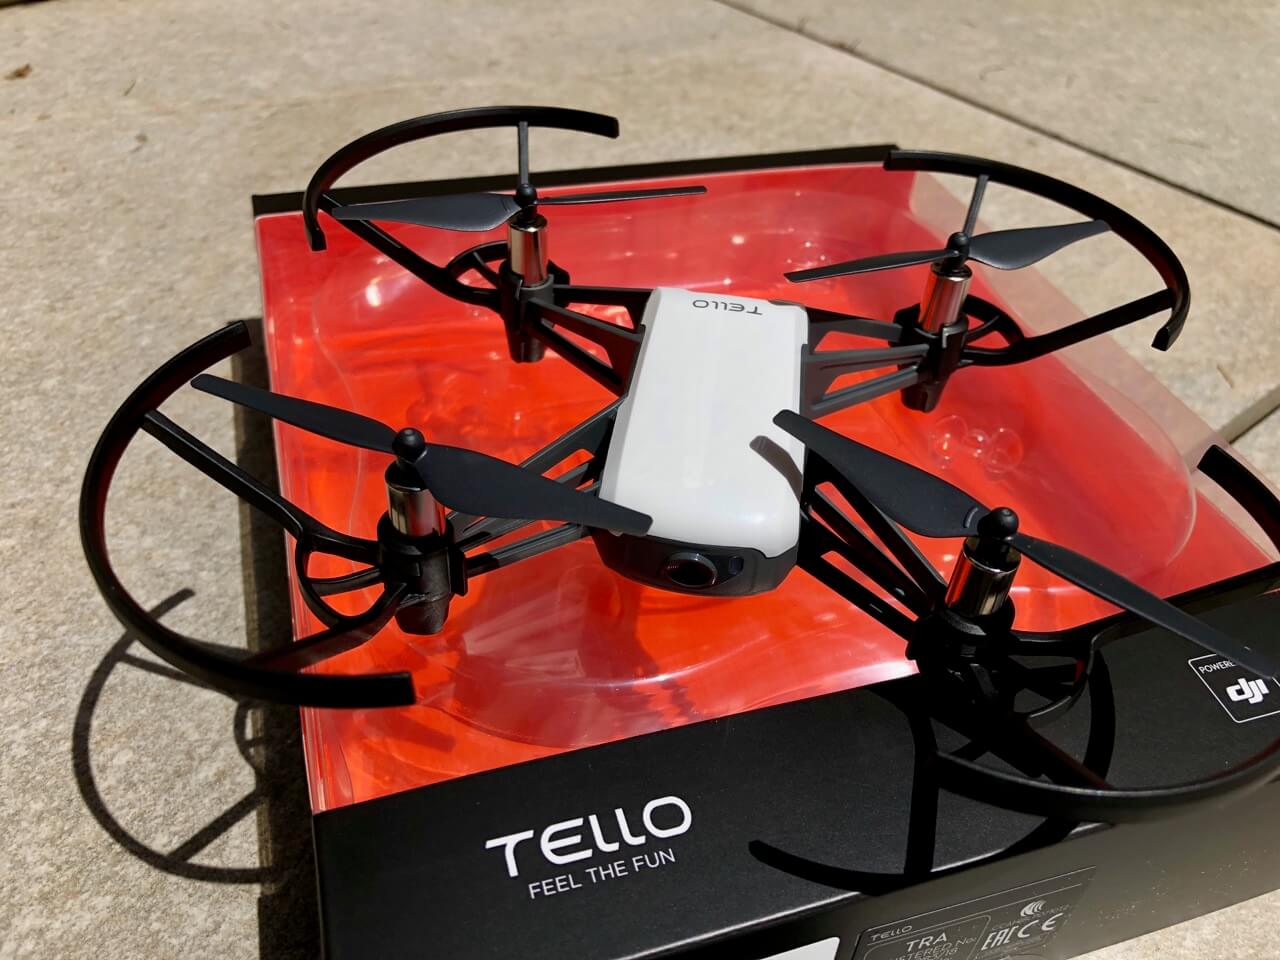 Erfahrungsbericht Tello Drohne